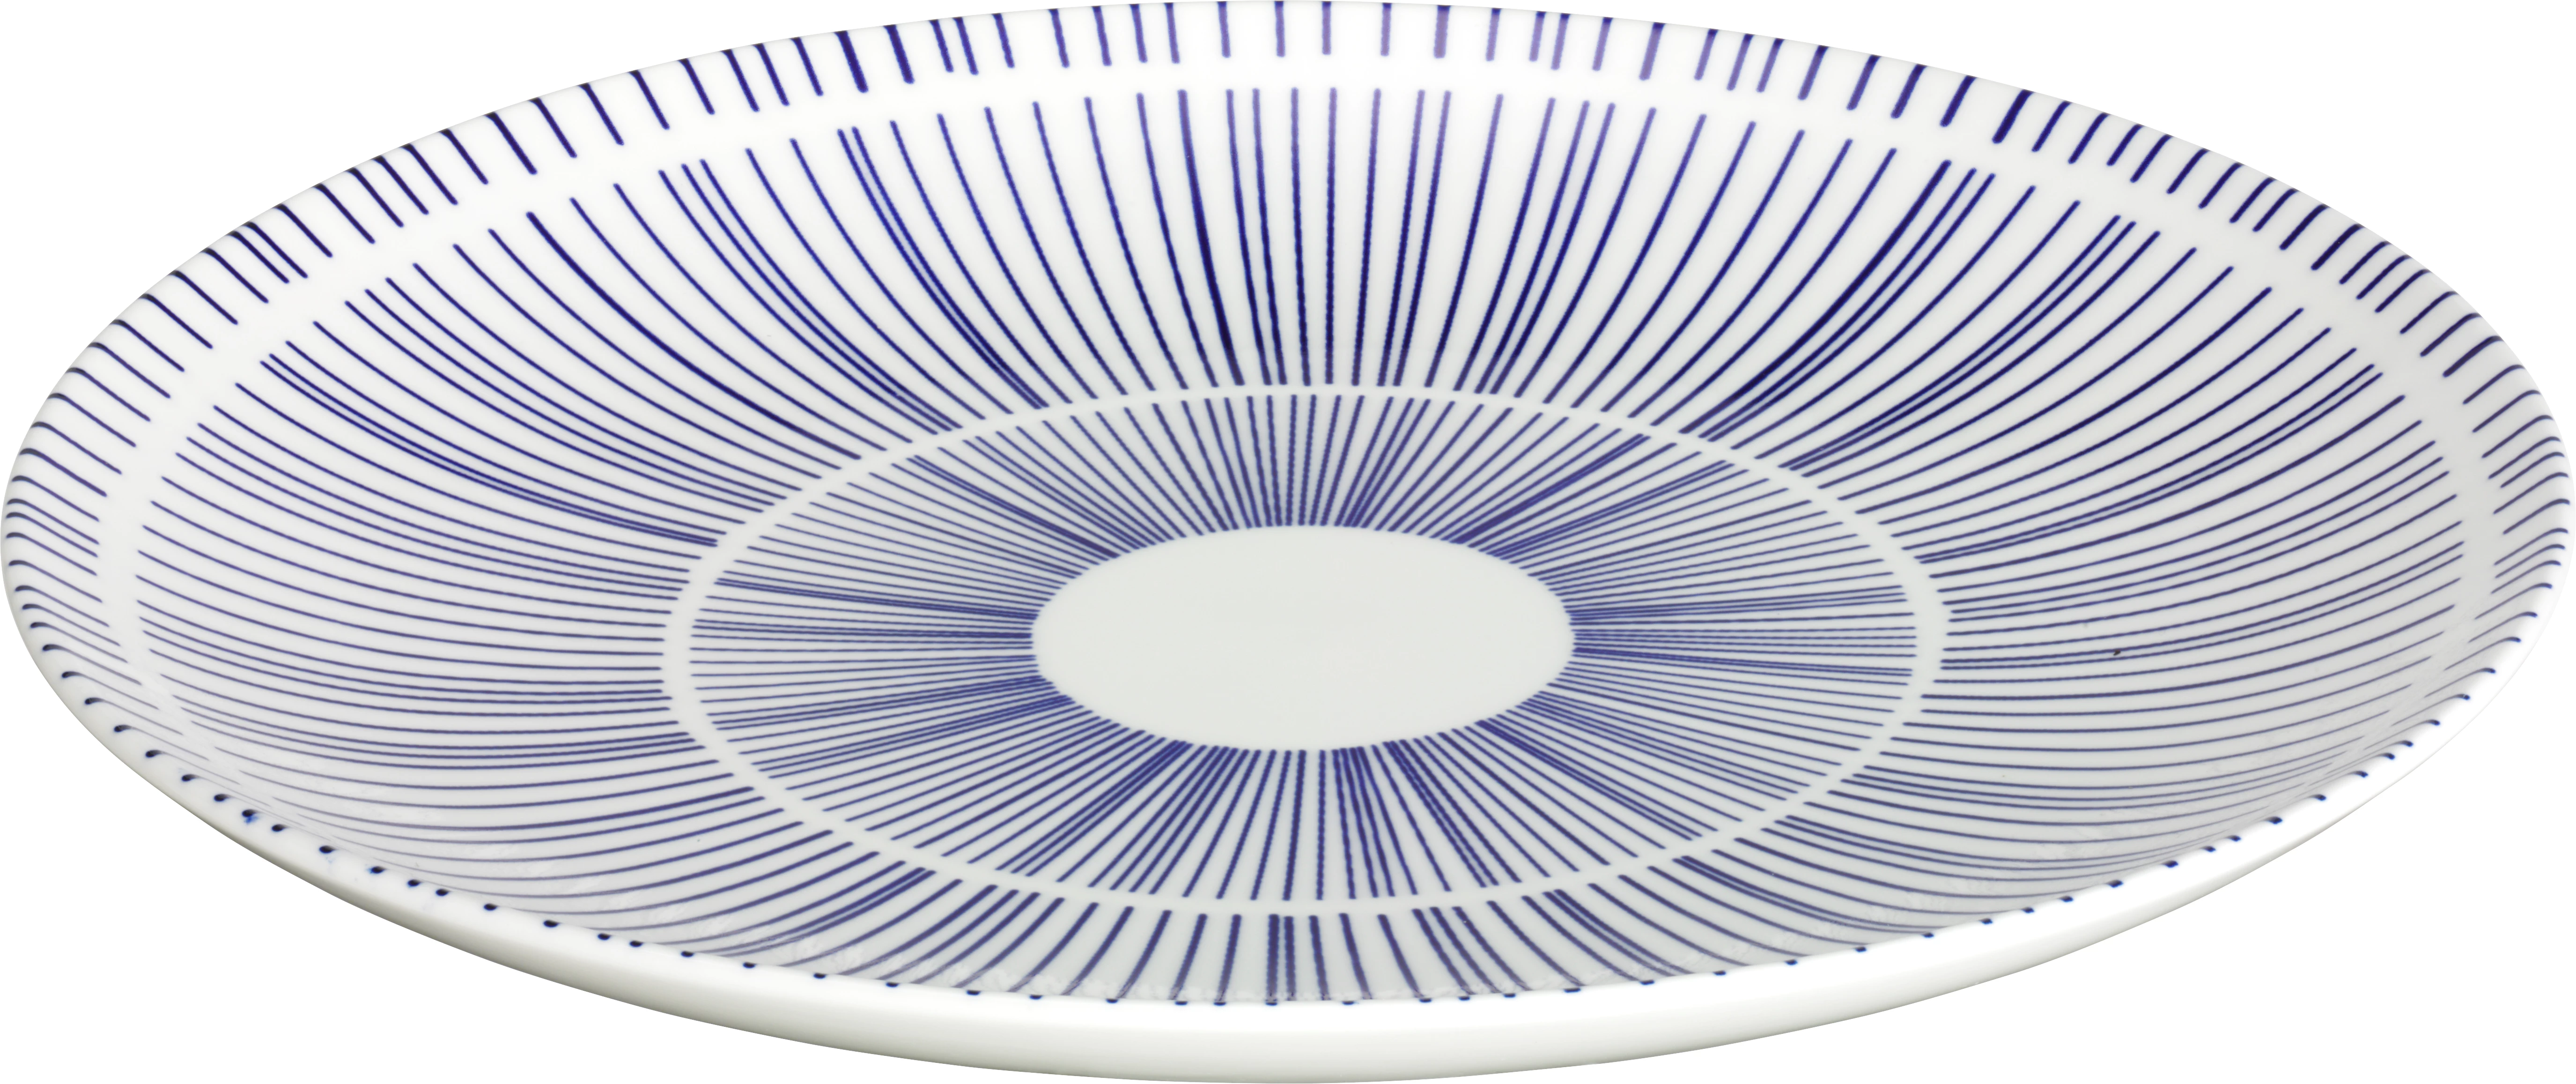 Porto tallerken uden fane, flad, hvid/blå, ø26 cm